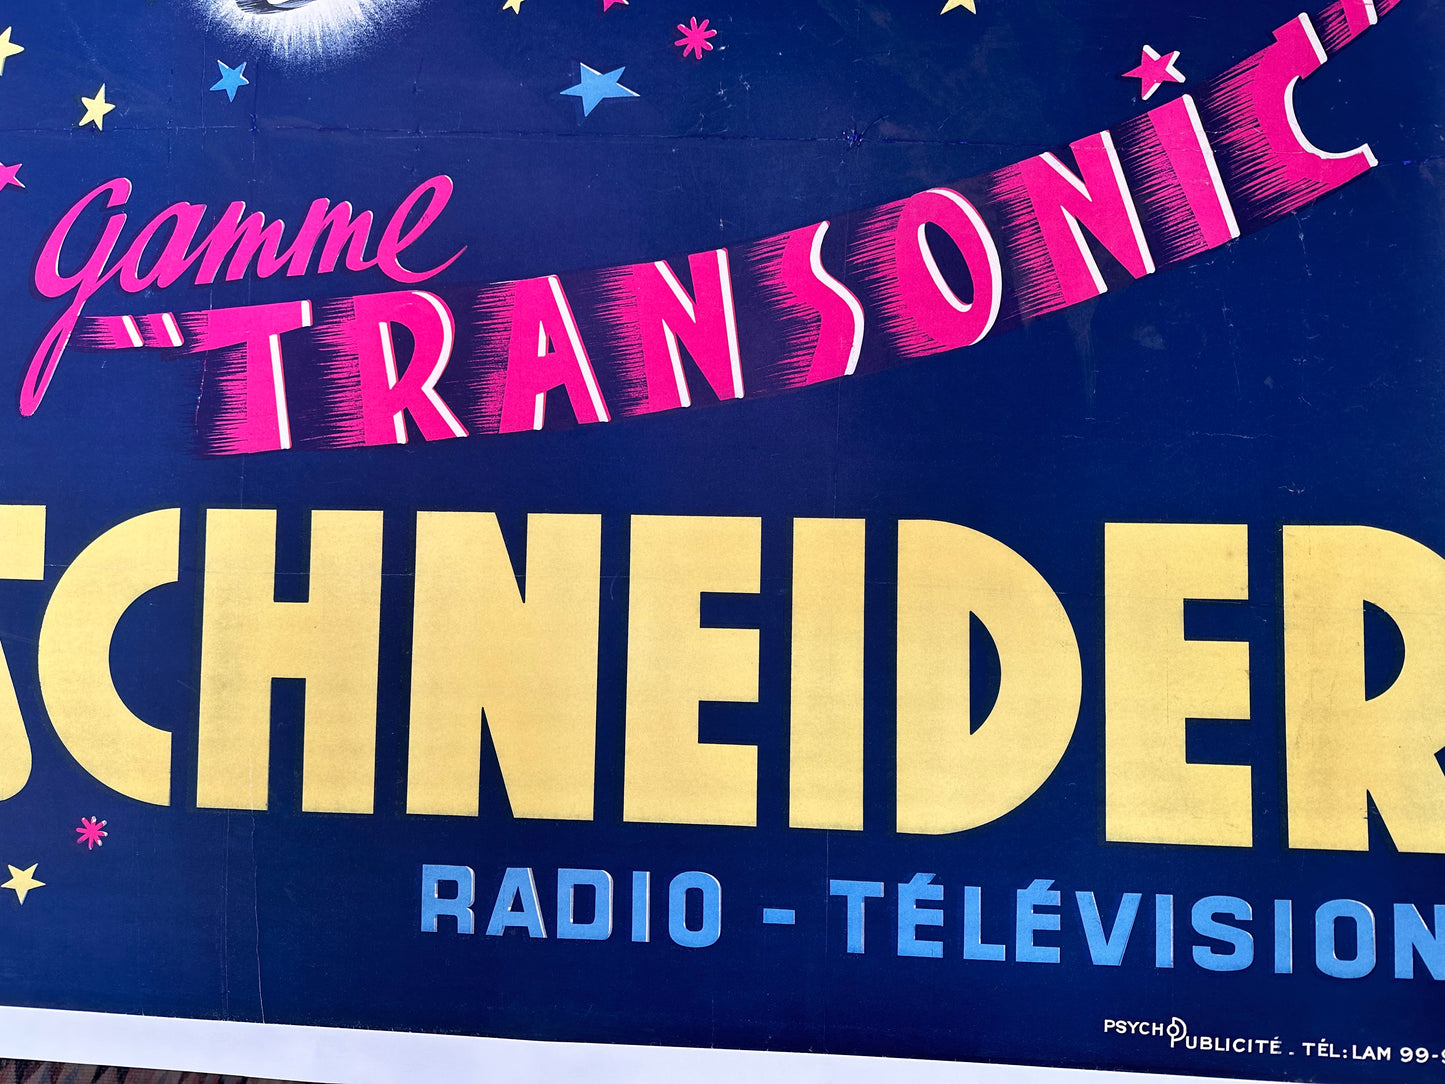 Schneider Gamme "Transonic" Advertisement by Muckens Tourot